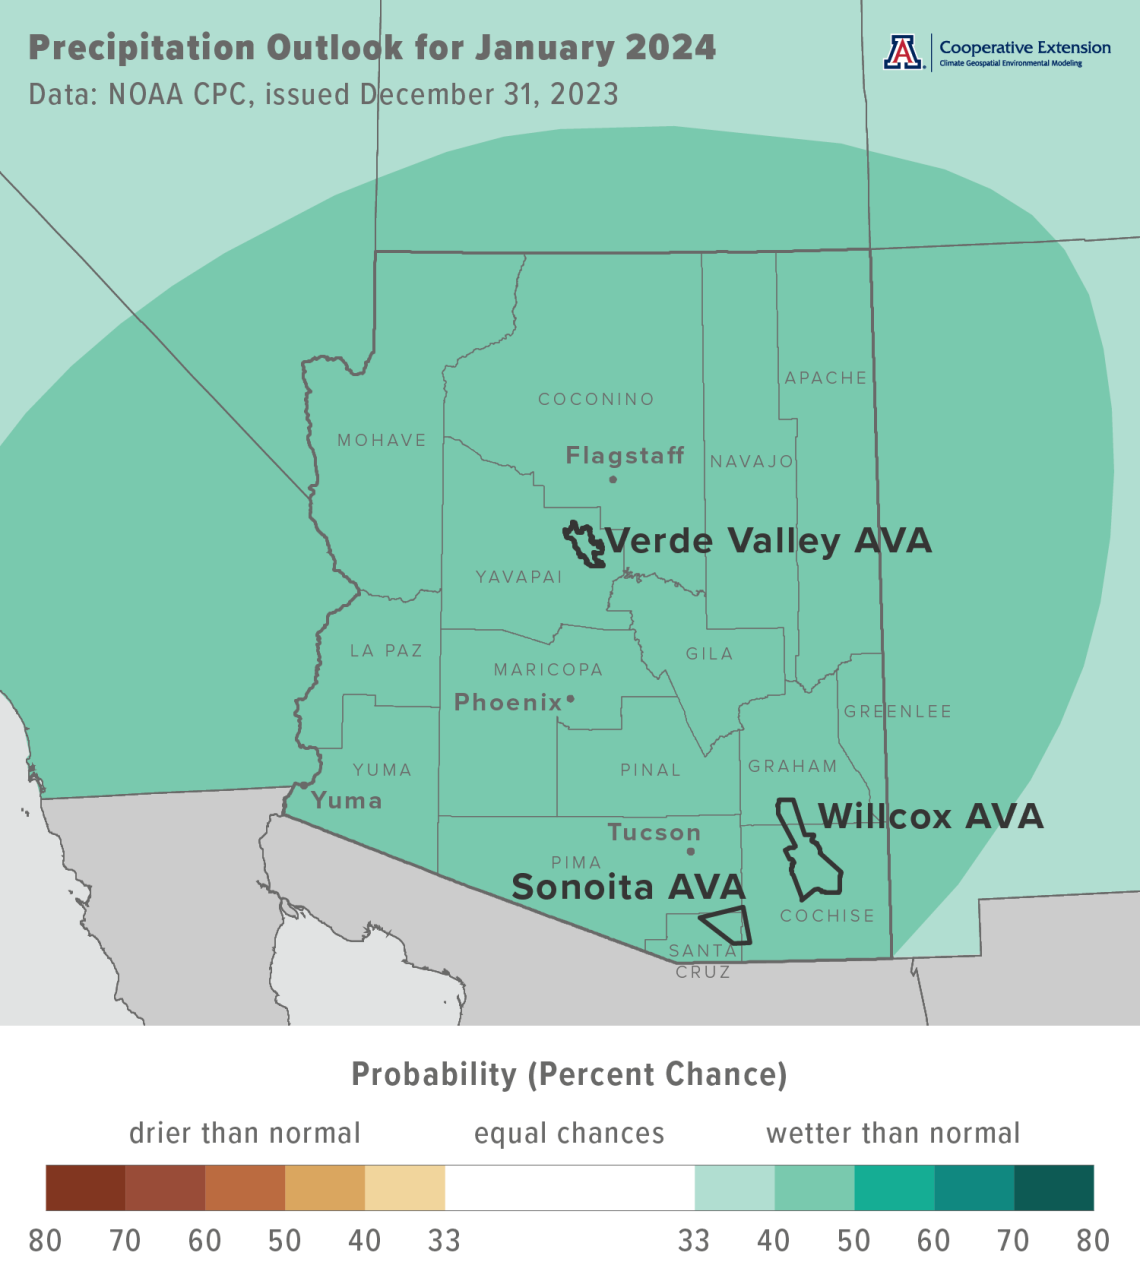 January 2024 precipitation outlook map for Arizona